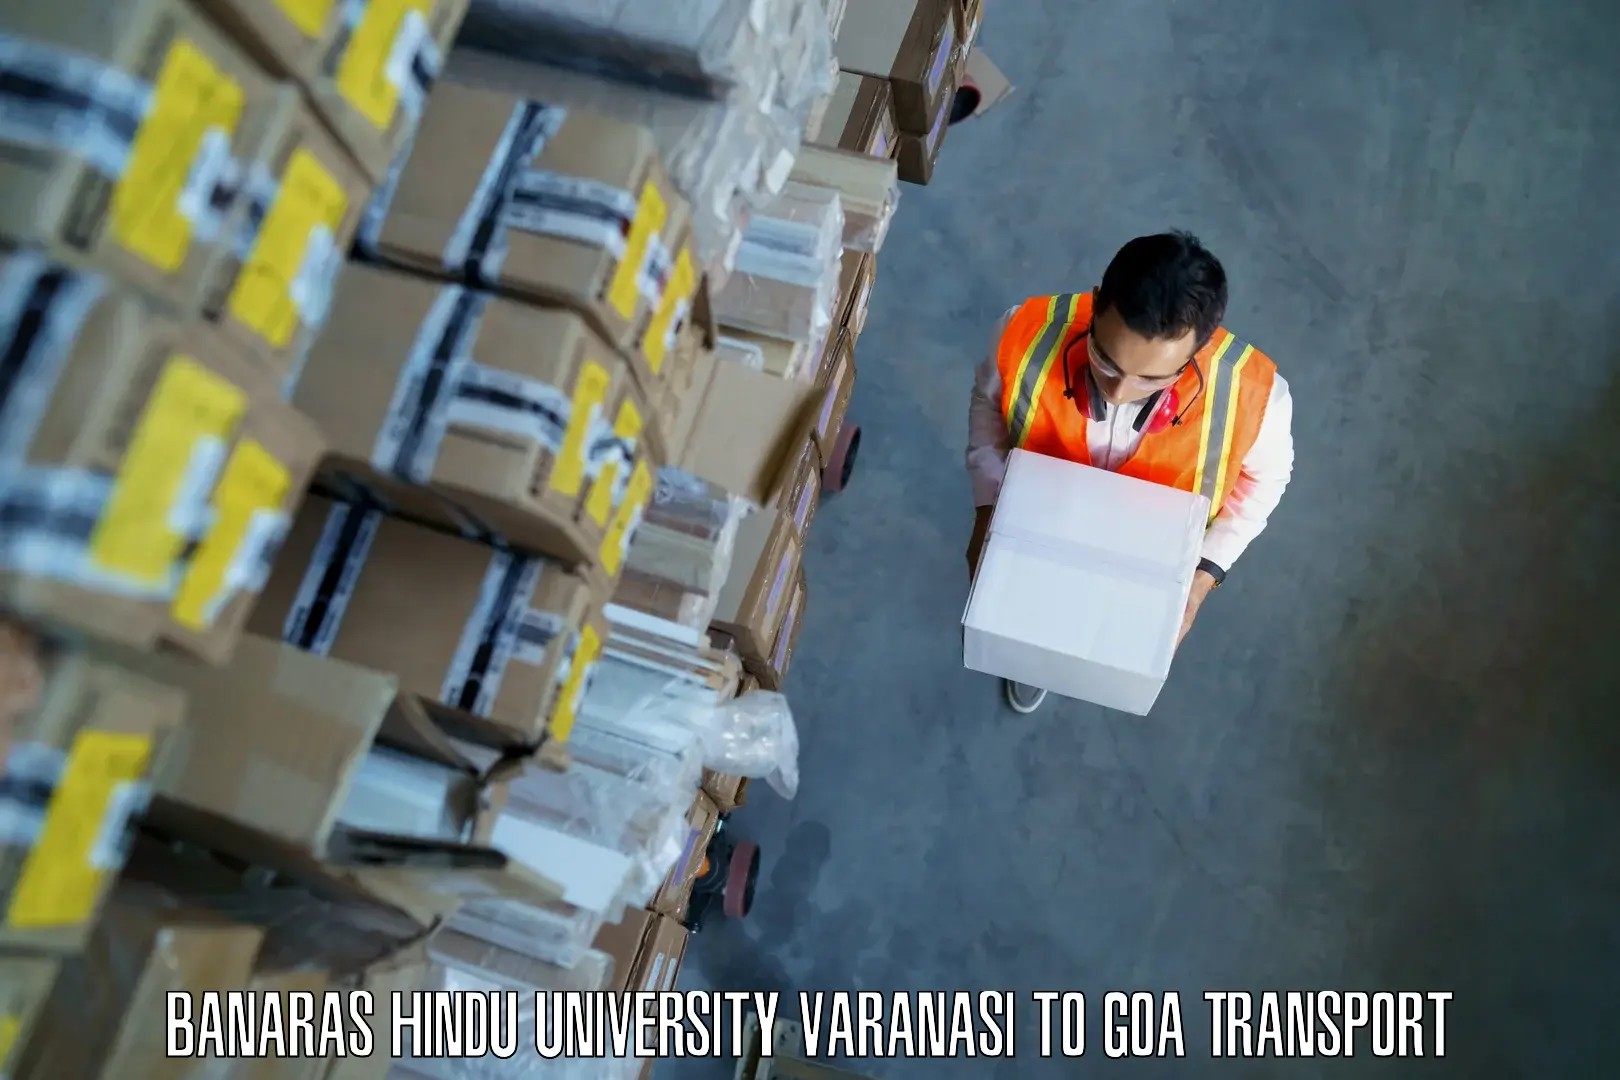 Intercity transport Banaras Hindu University Varanasi to Vasco da Gama